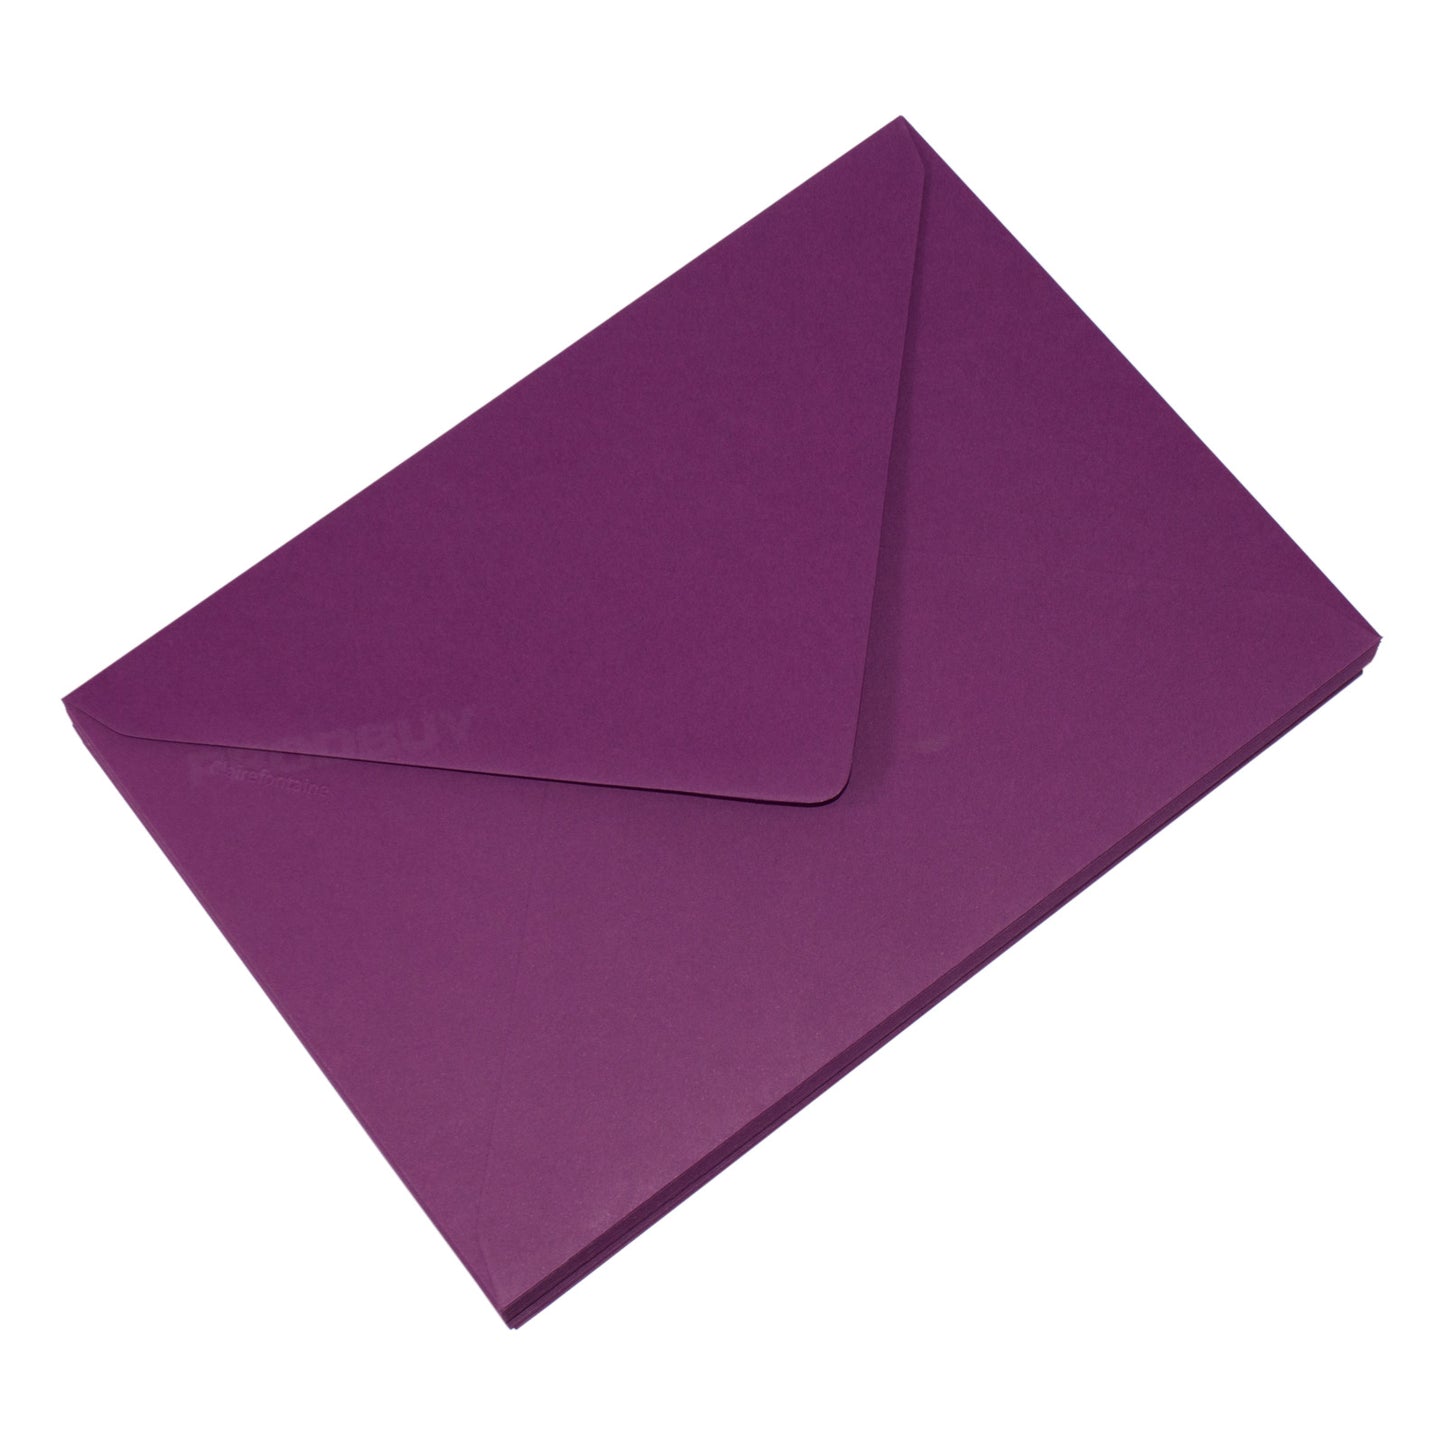 Set of 40 High Quality Plain C5 Envelopes 120gsm with 'Blackcurrant' Purple Colour